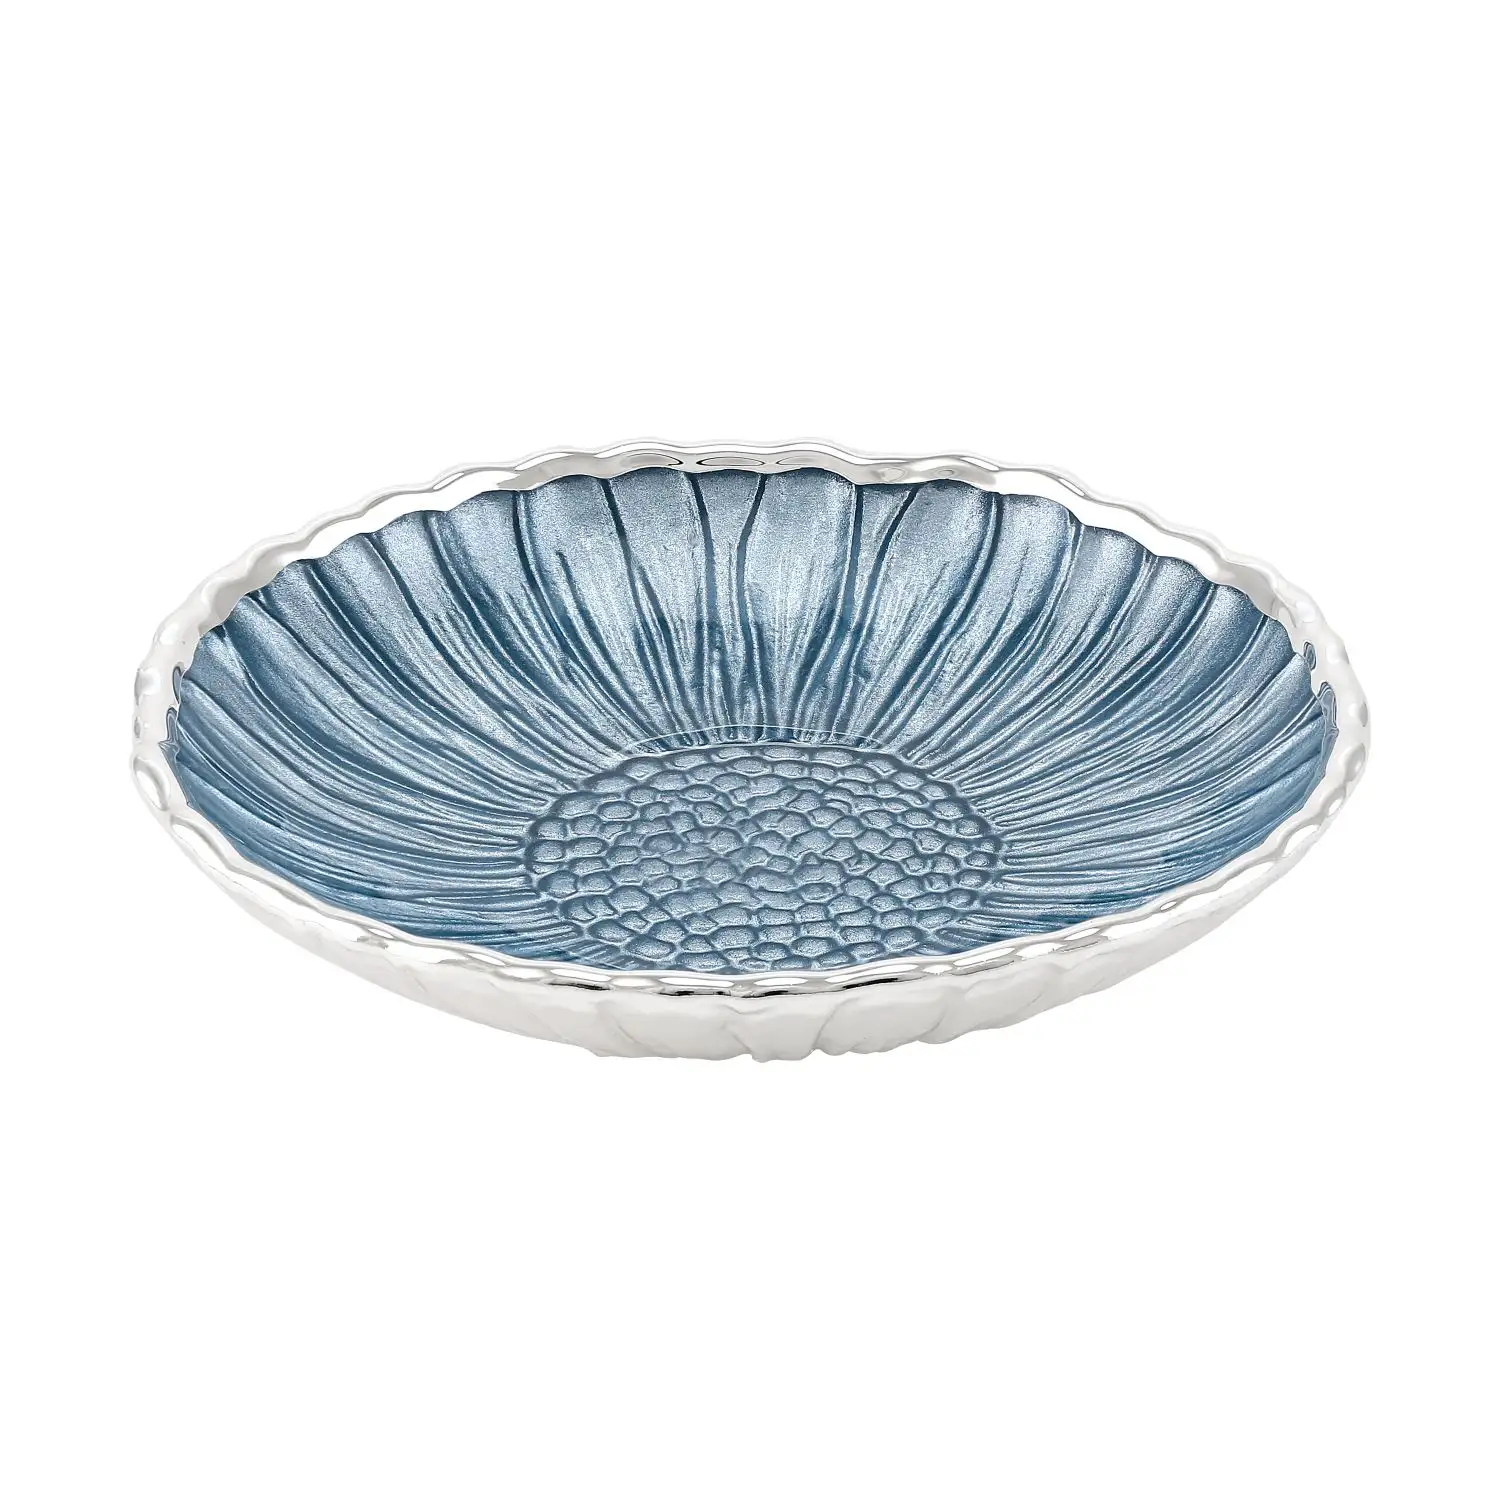 Тарелка стеклянная GIRASOLE (цвет небесно-голубой) диаметр 14 см тарелка стеклянная conchiglia цвет небесно голубой диаметр 15 см